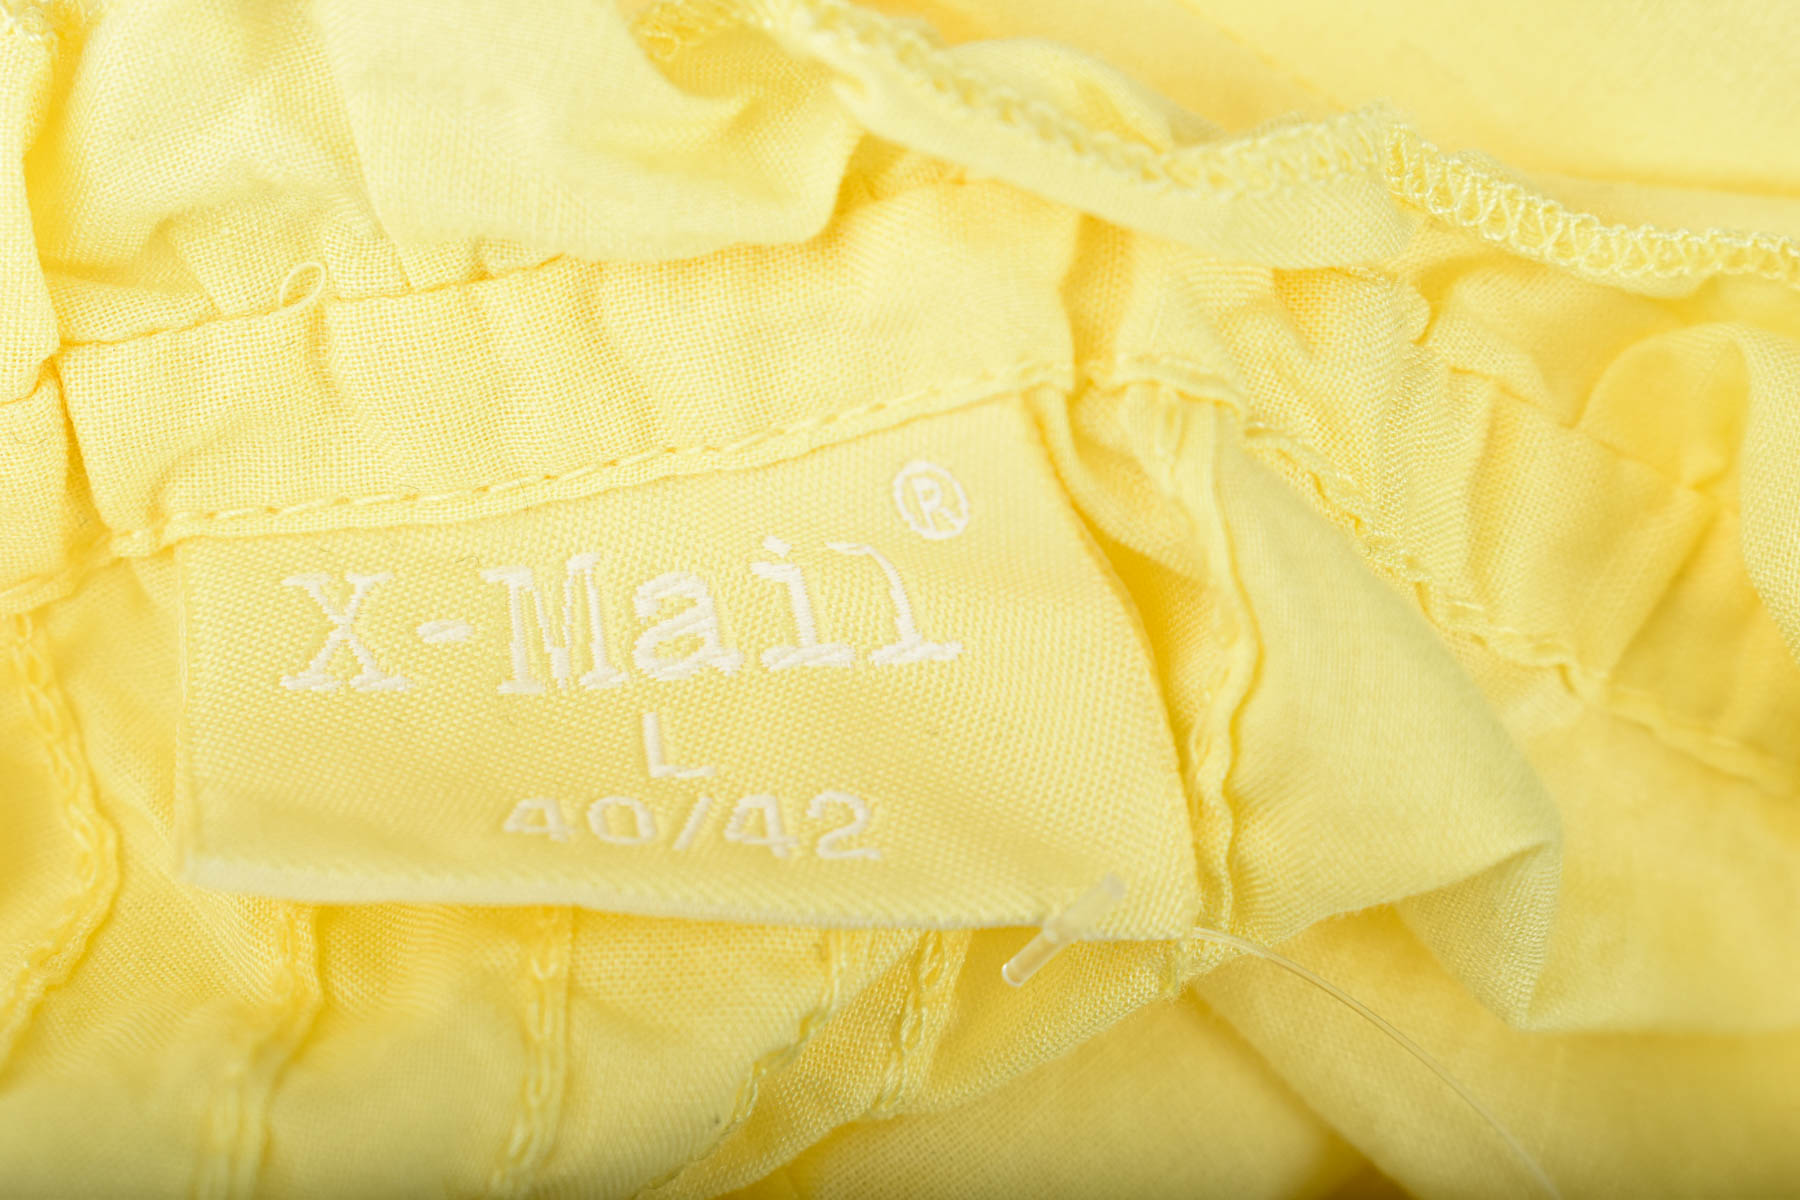 Cămașa de damă - X-Mail - 2